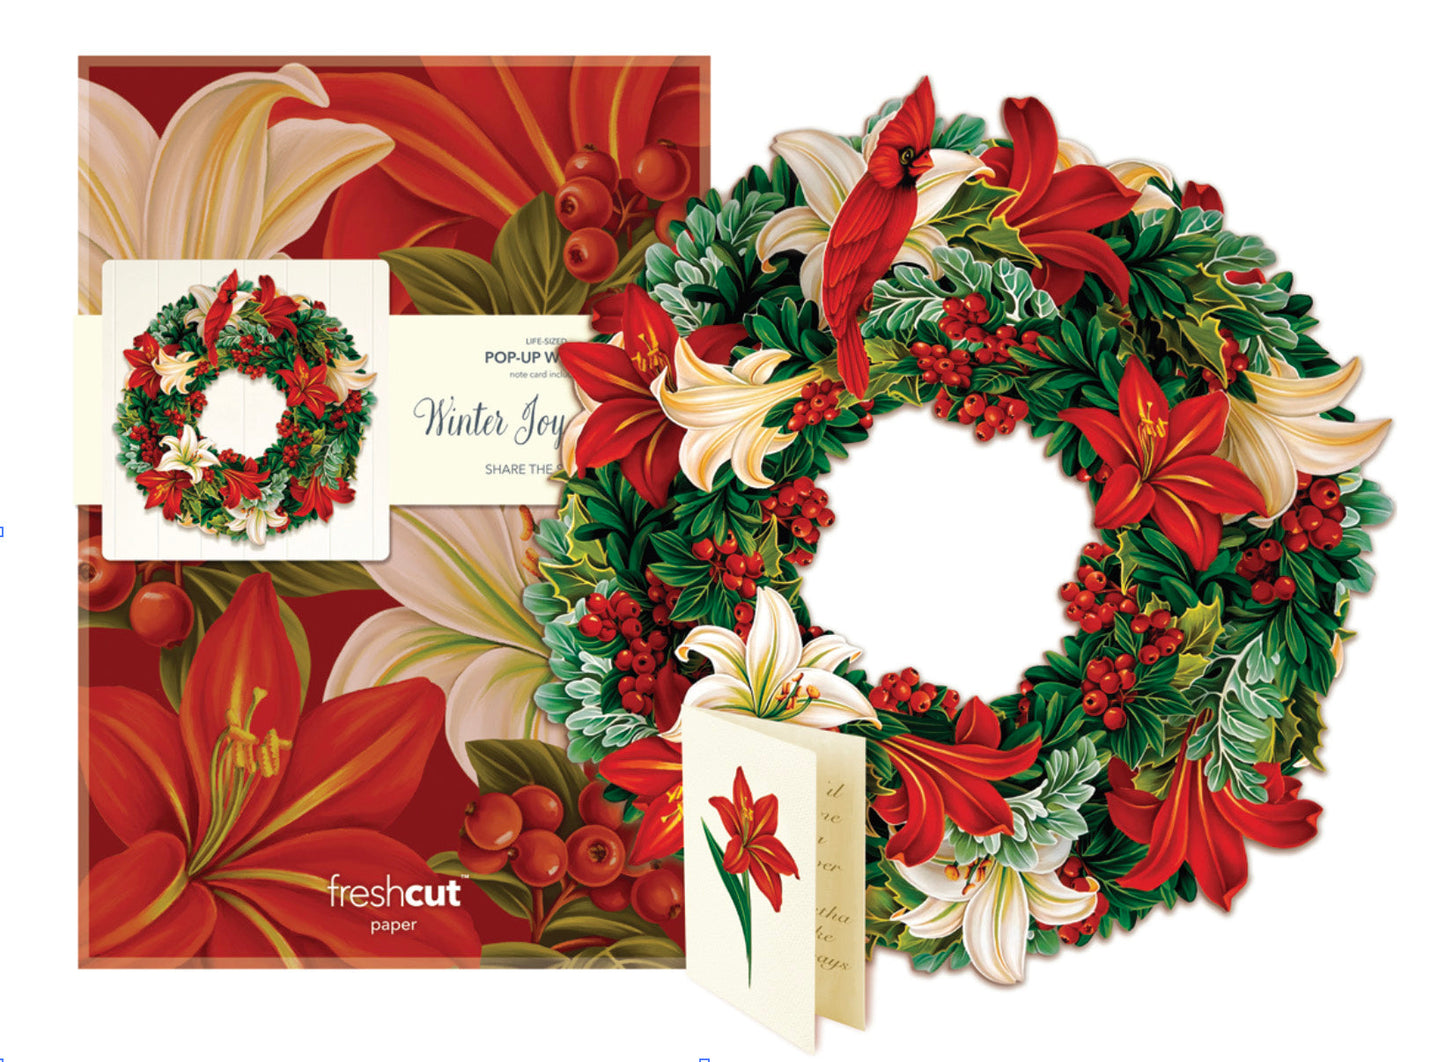 Winter Joy Pop-up Paper Wreath